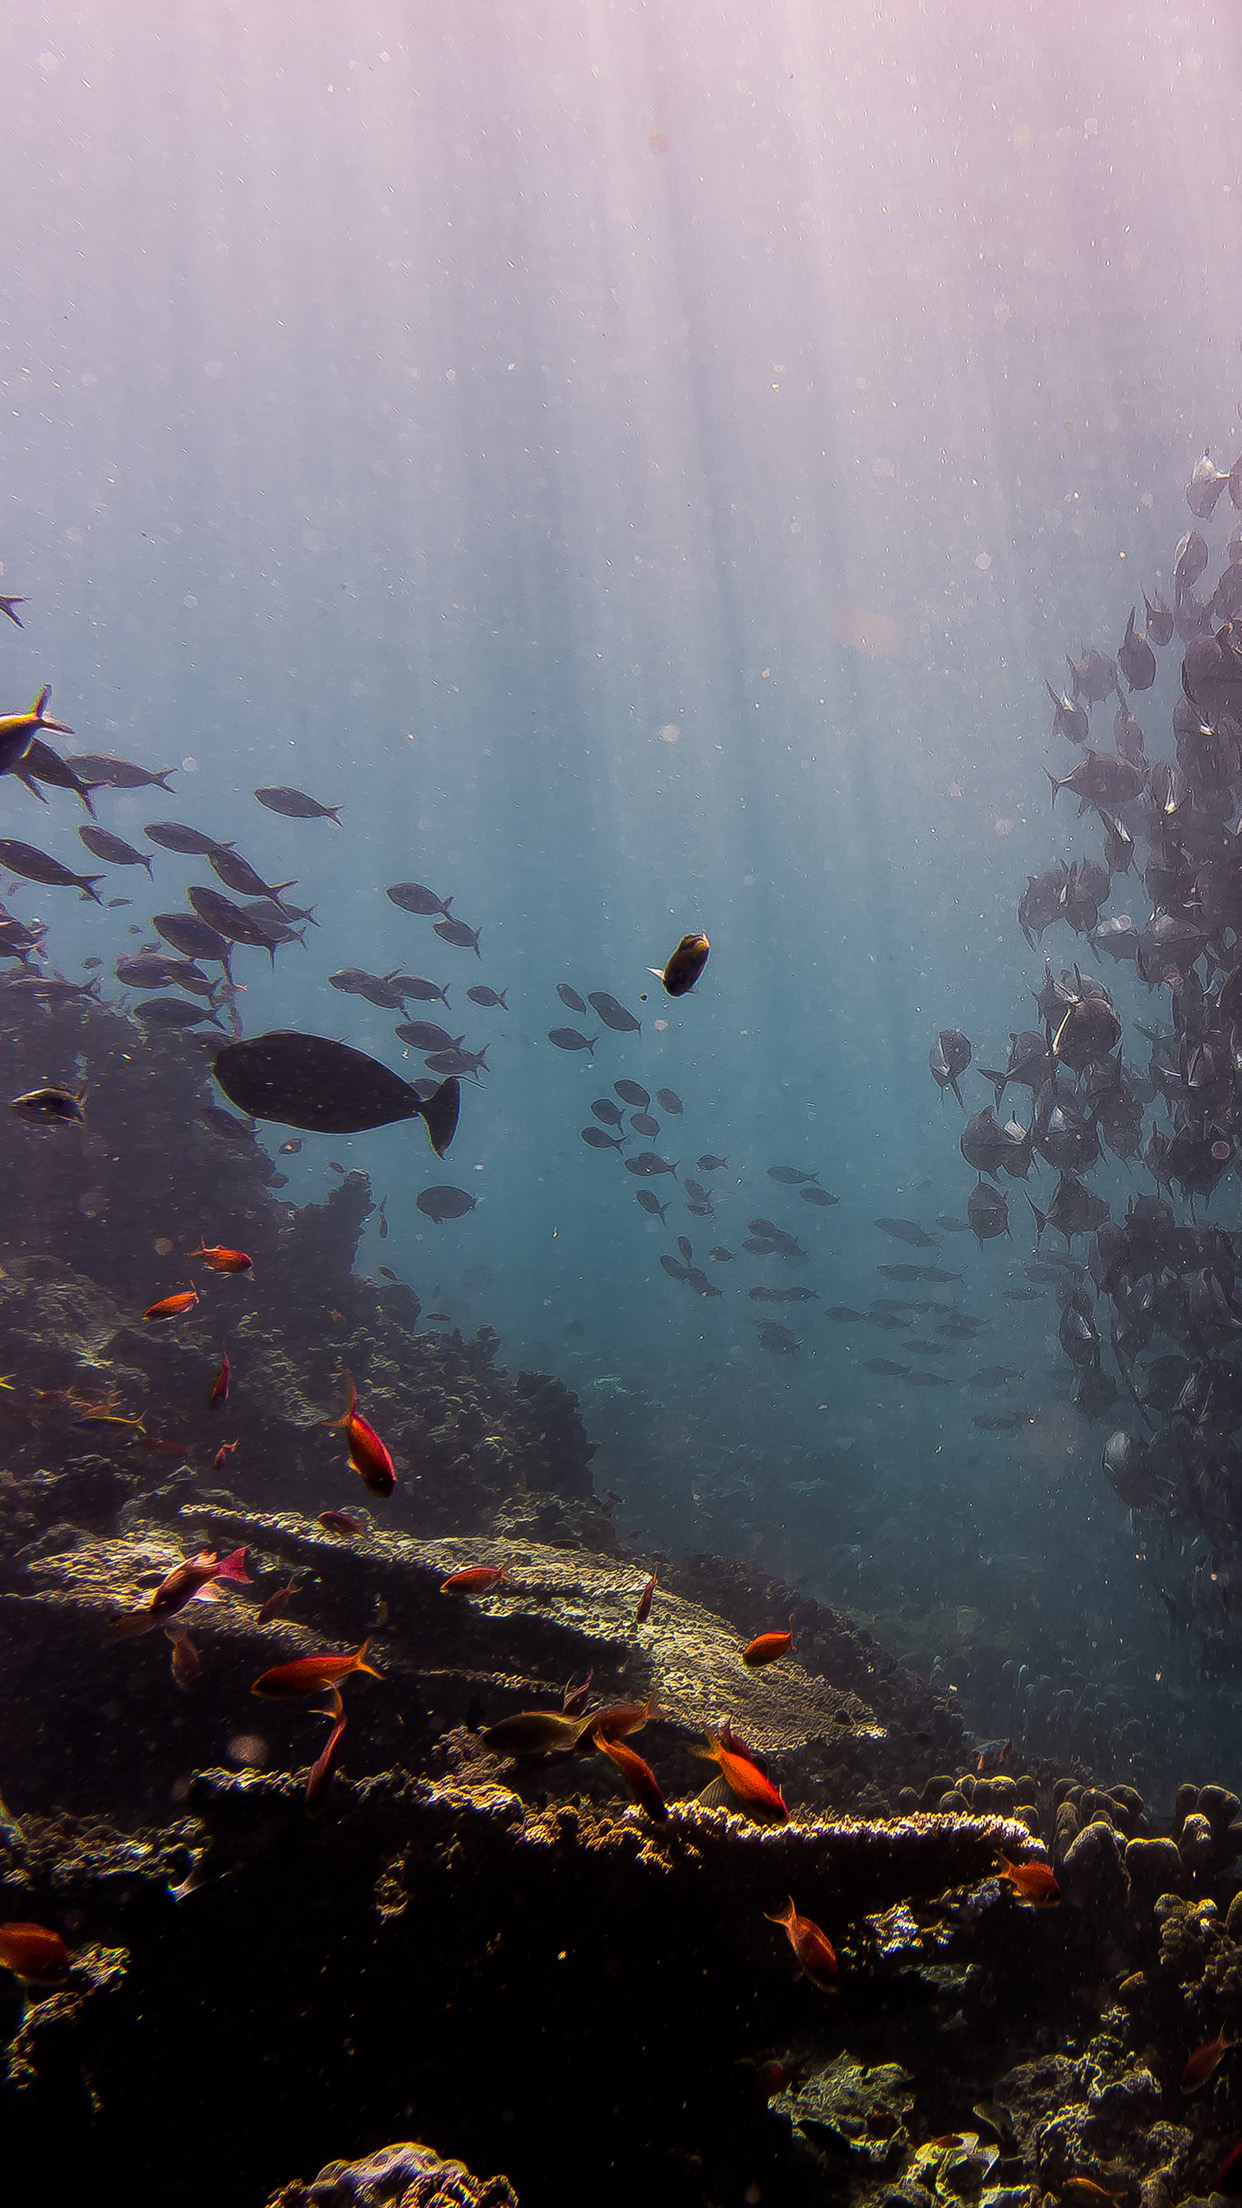 iPhone X wallpaper. deep dive sea fish ocean water nature